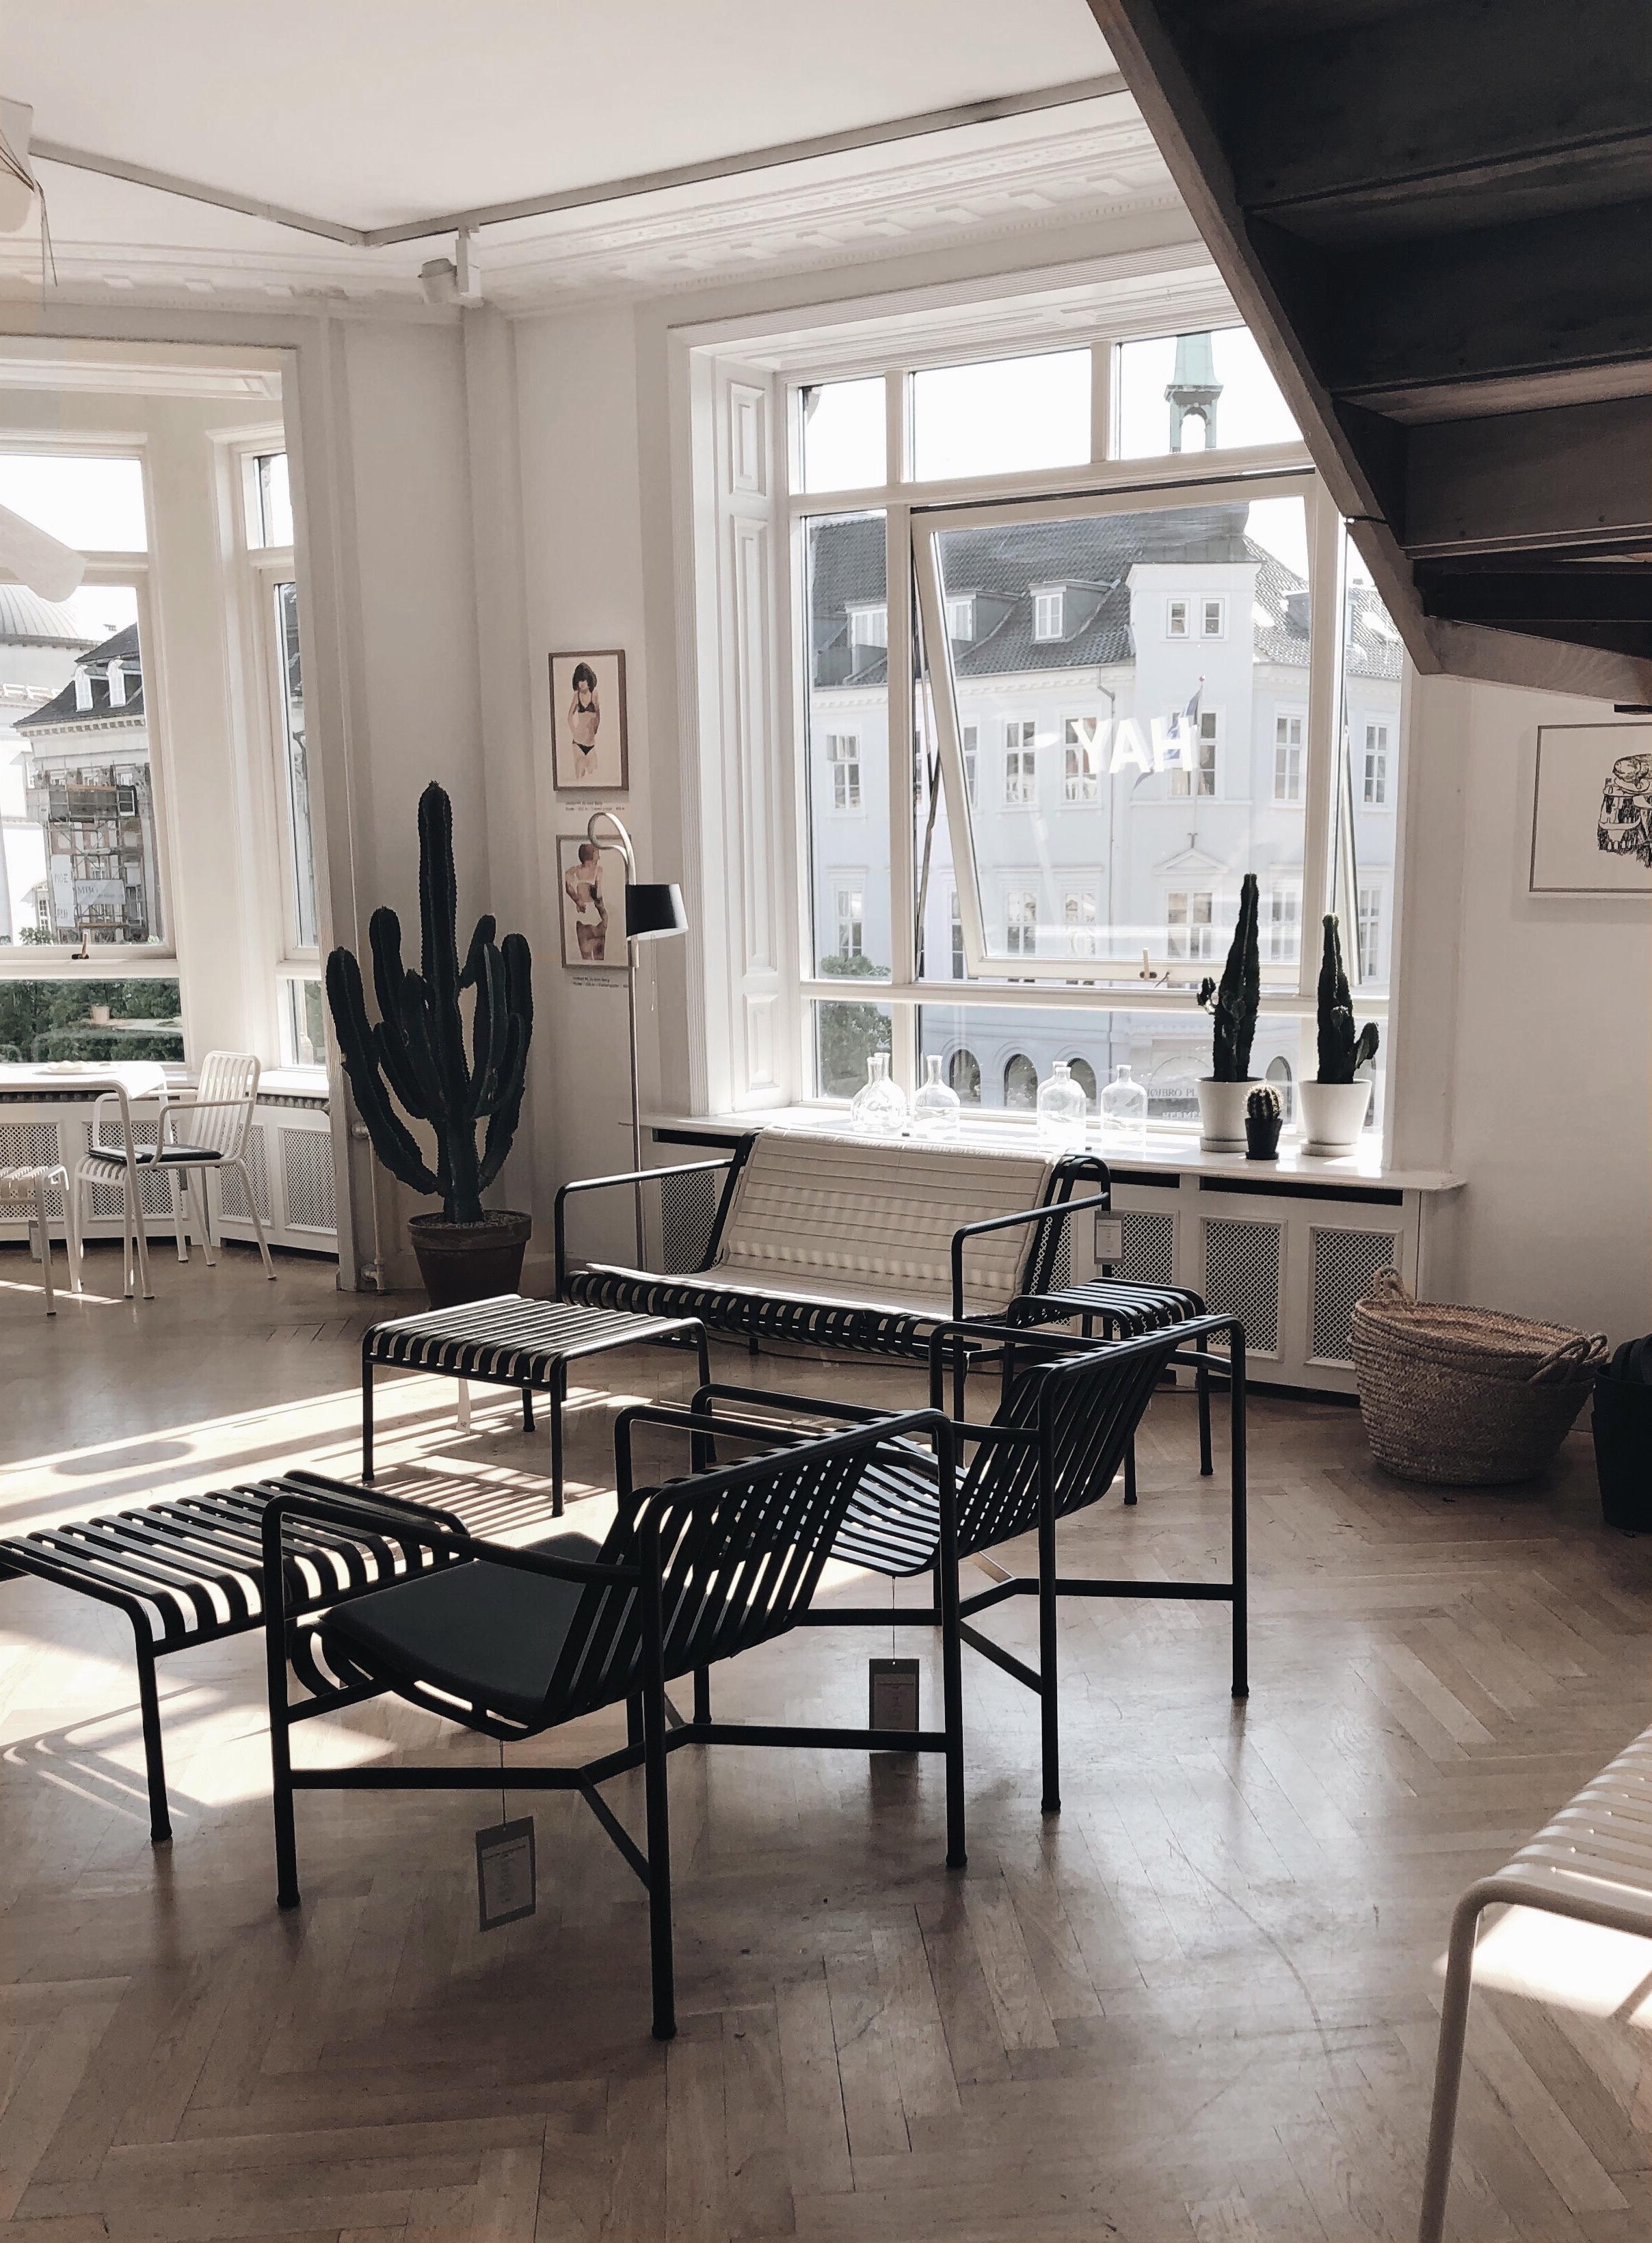 HAY House in #copenhagen 
#københavn#hay#haydesign#interior
#interiordesign#interiør#danishdesign